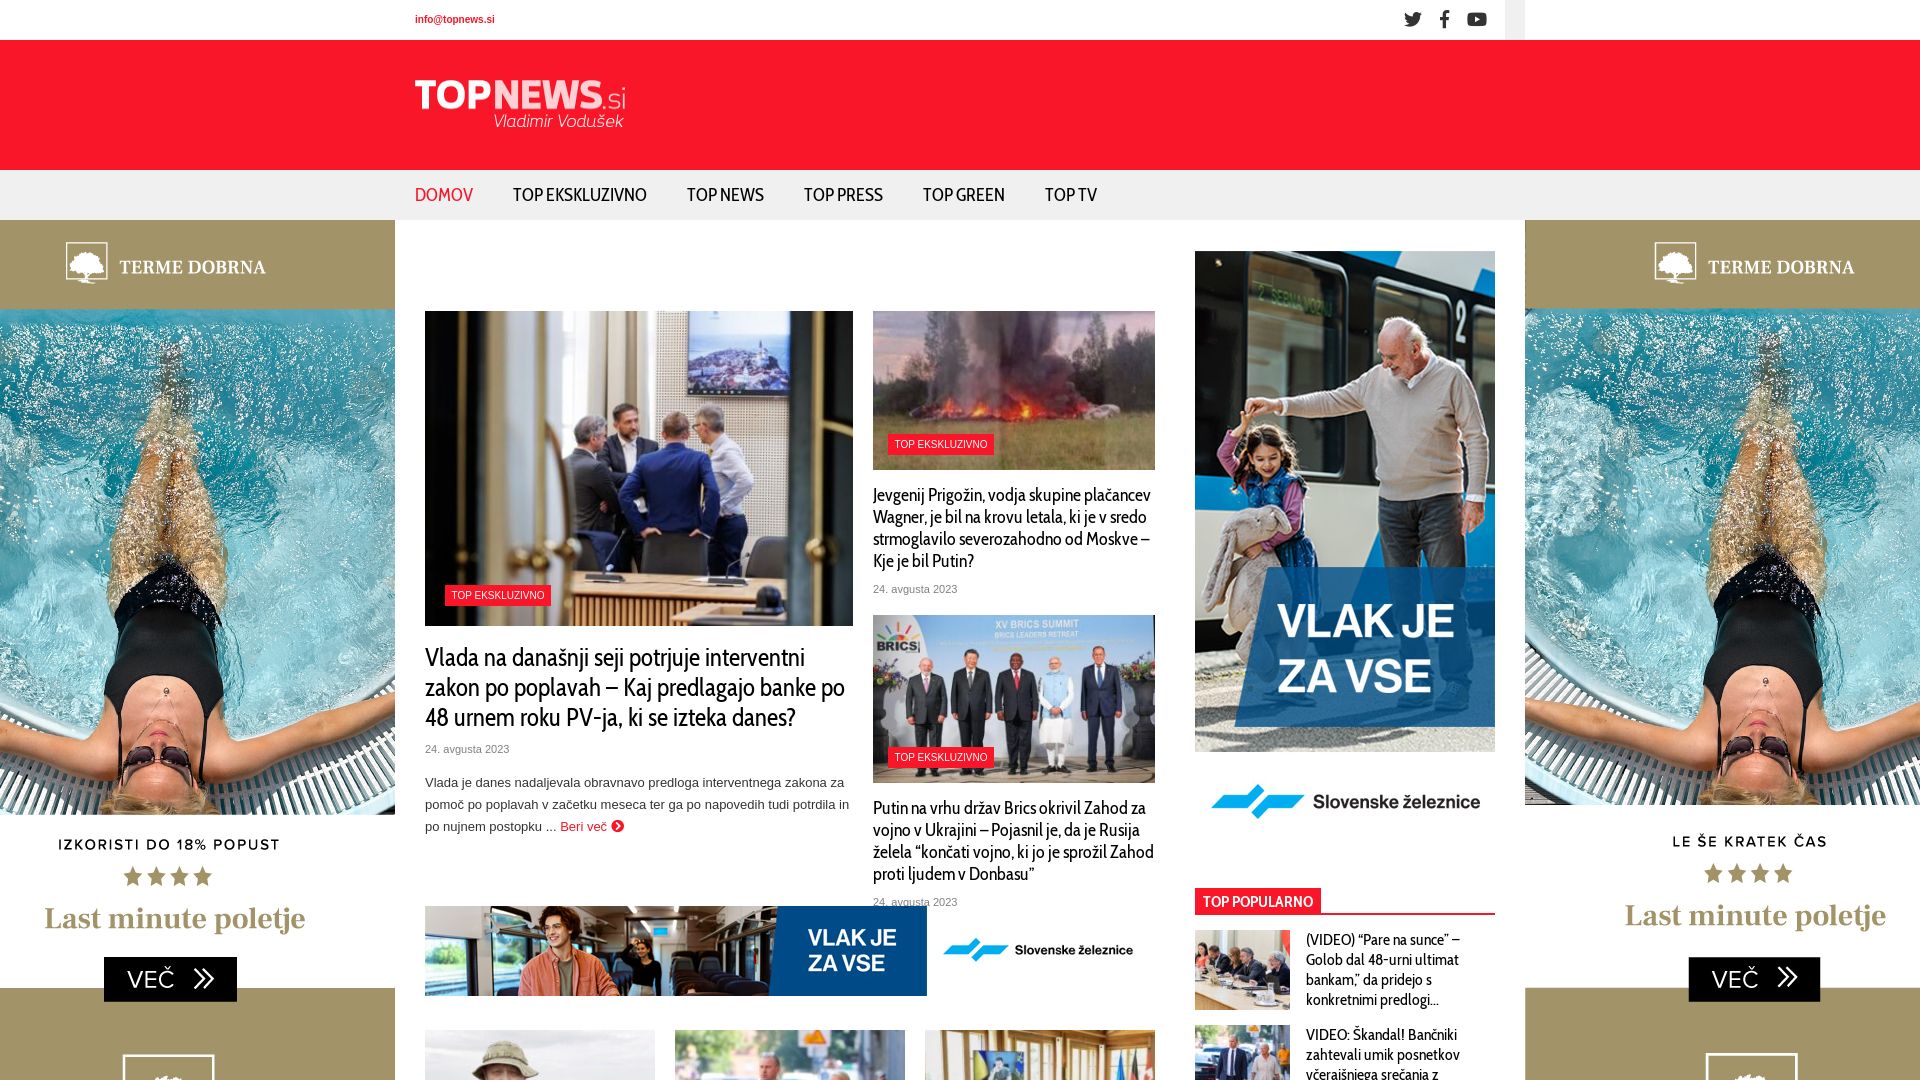 网站状态 topnews.si 是  在线的